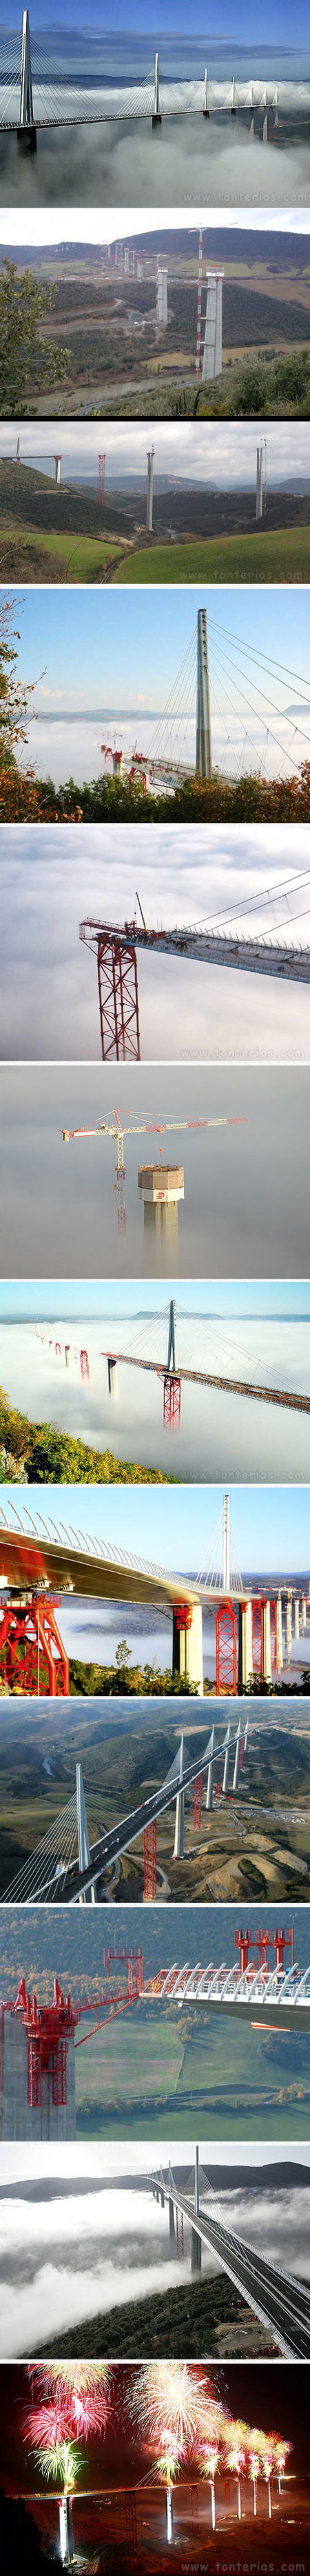 El viaductos más alto del mundo